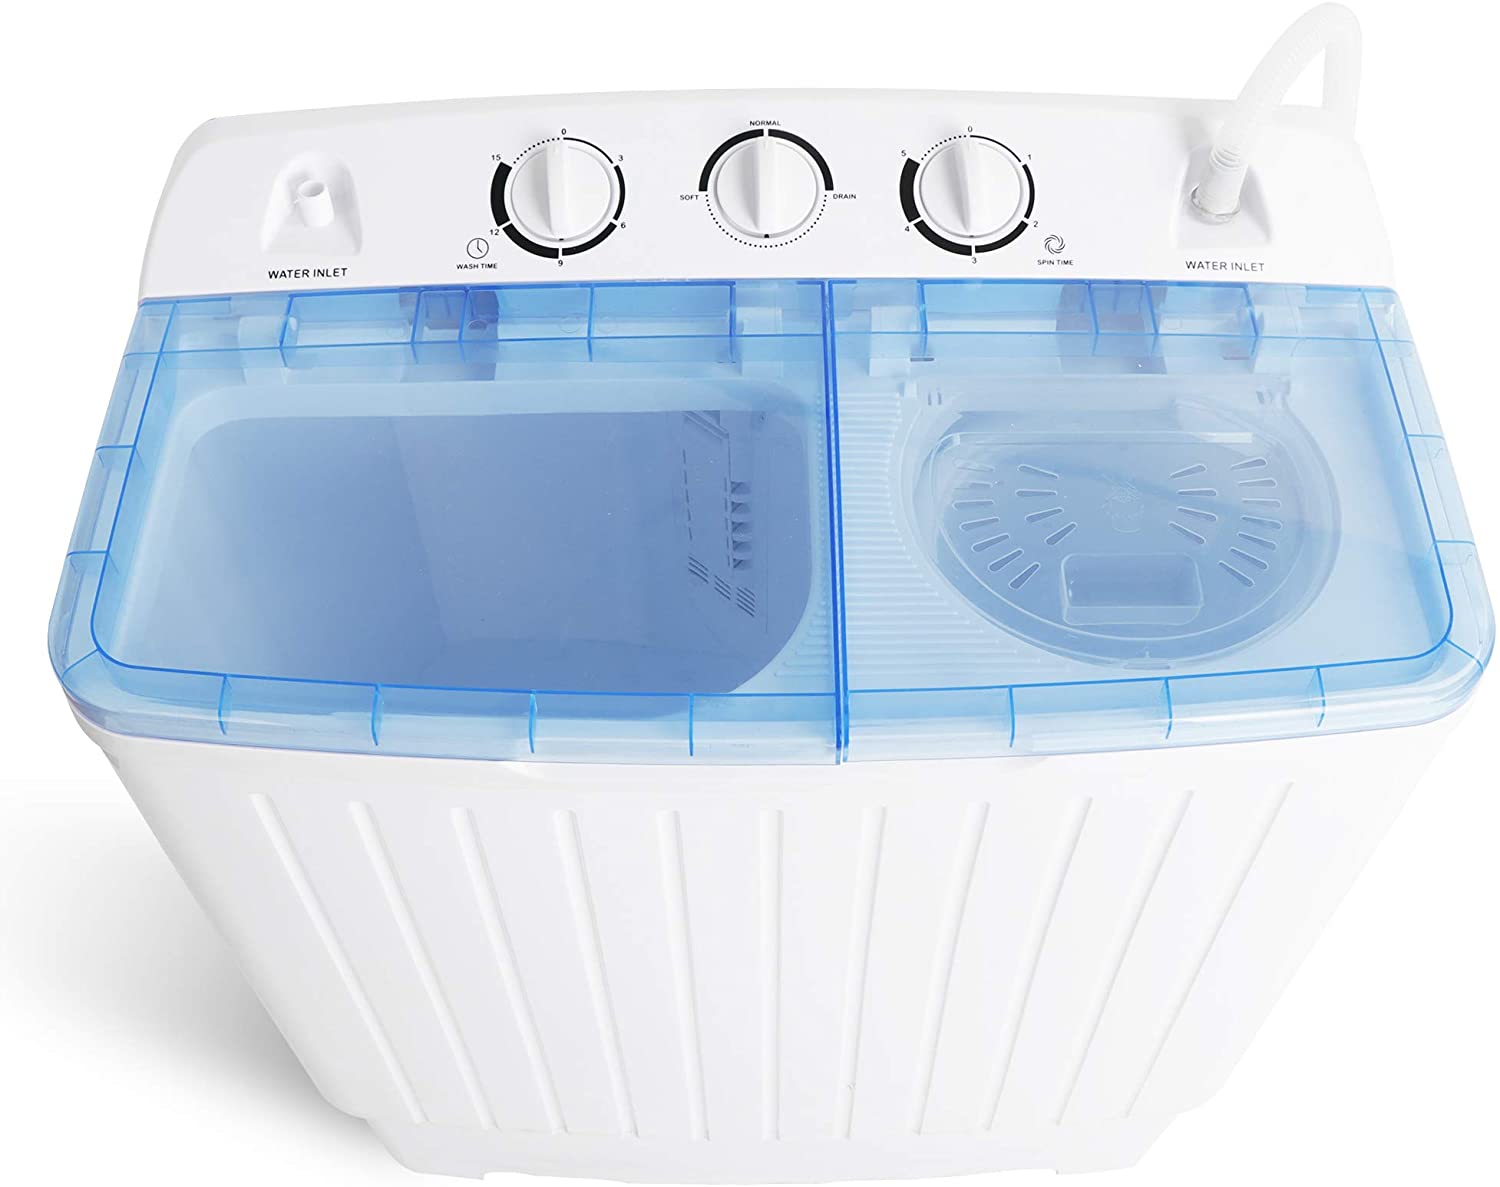 2IN1 Mini Portable Washing Machine, 7.6lbs Twin Tub